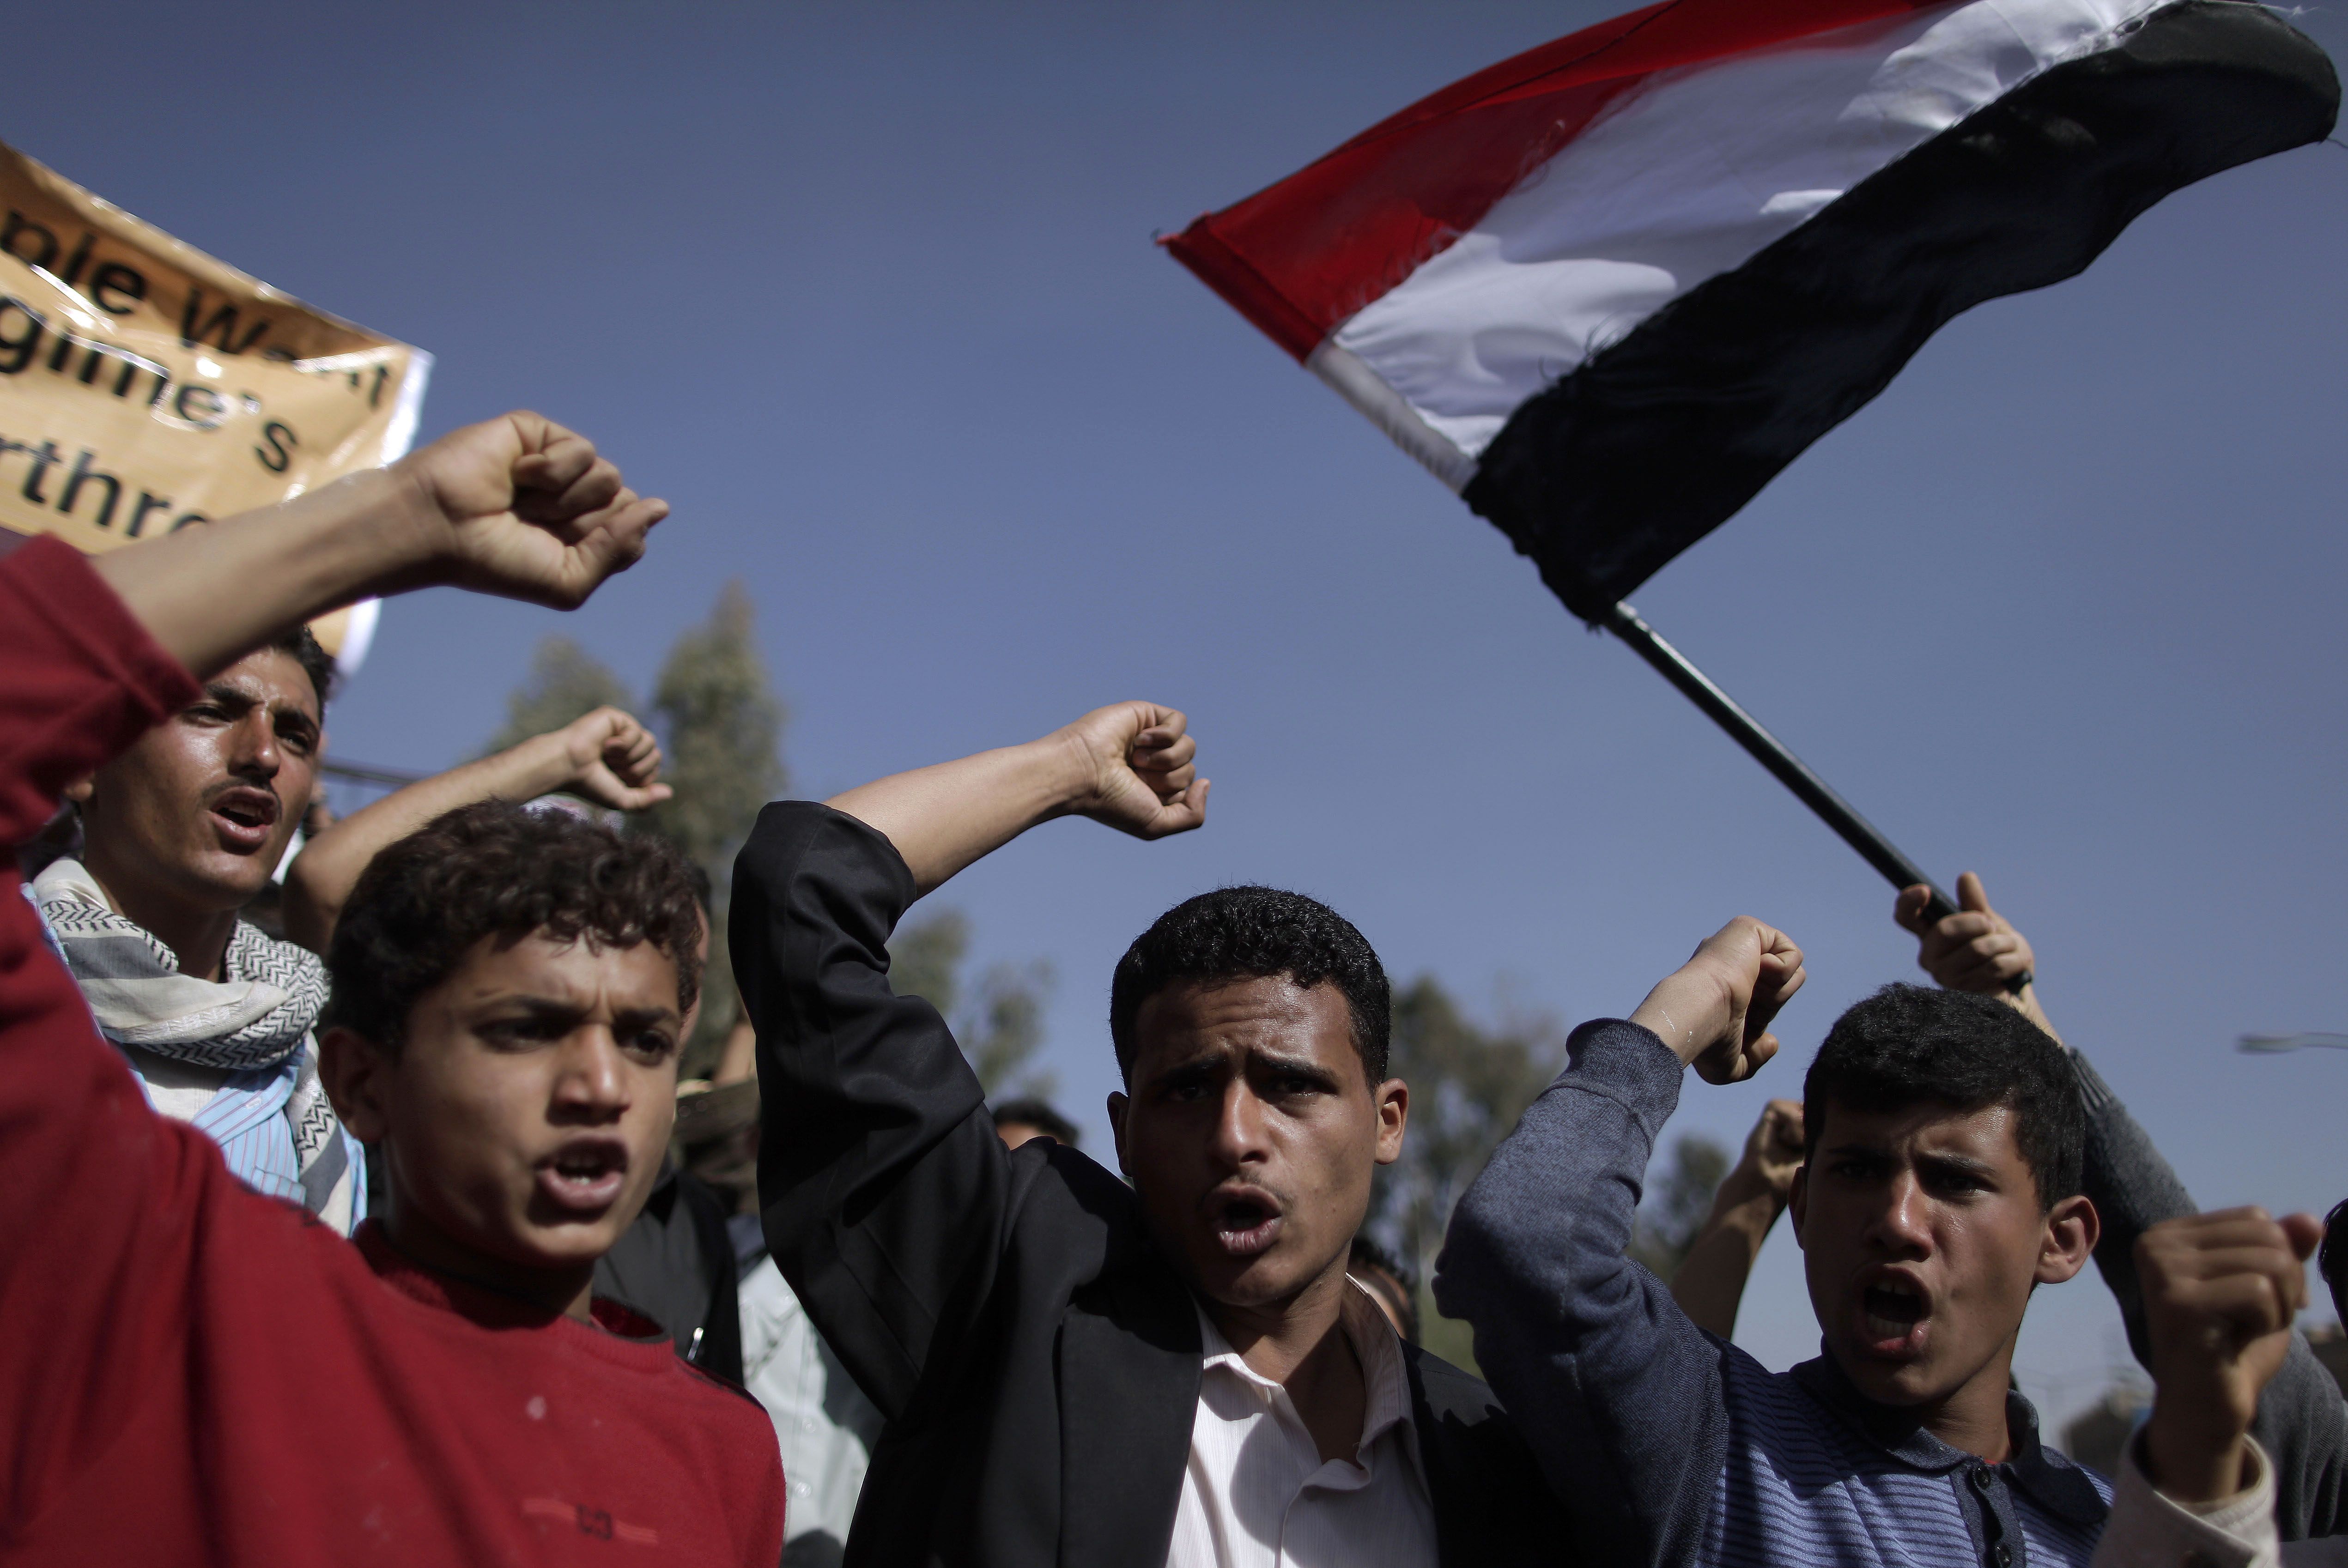 Likt den revolutionära utvecklingen i Egypten har flera demonstranter satt upp tält och bosatt sig på torgen för att kunna delta mer aktivt i manifestationerna.